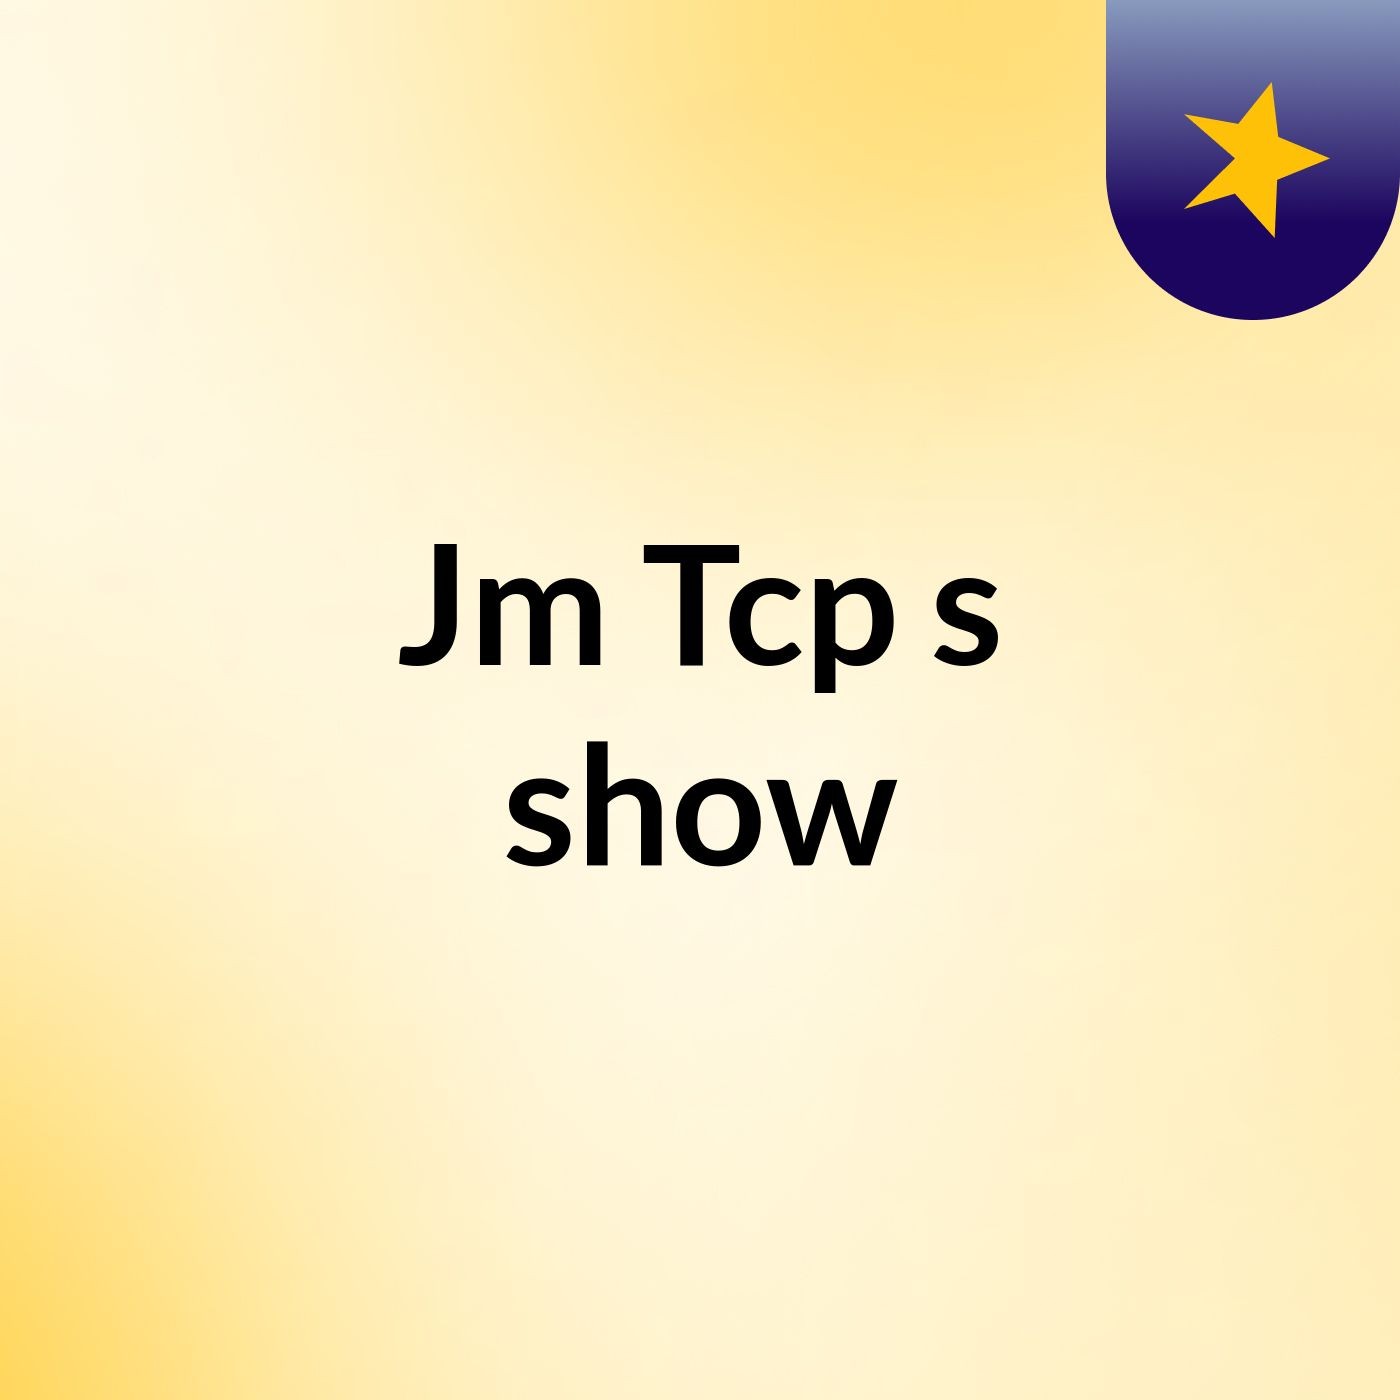 Jm Tcp's show